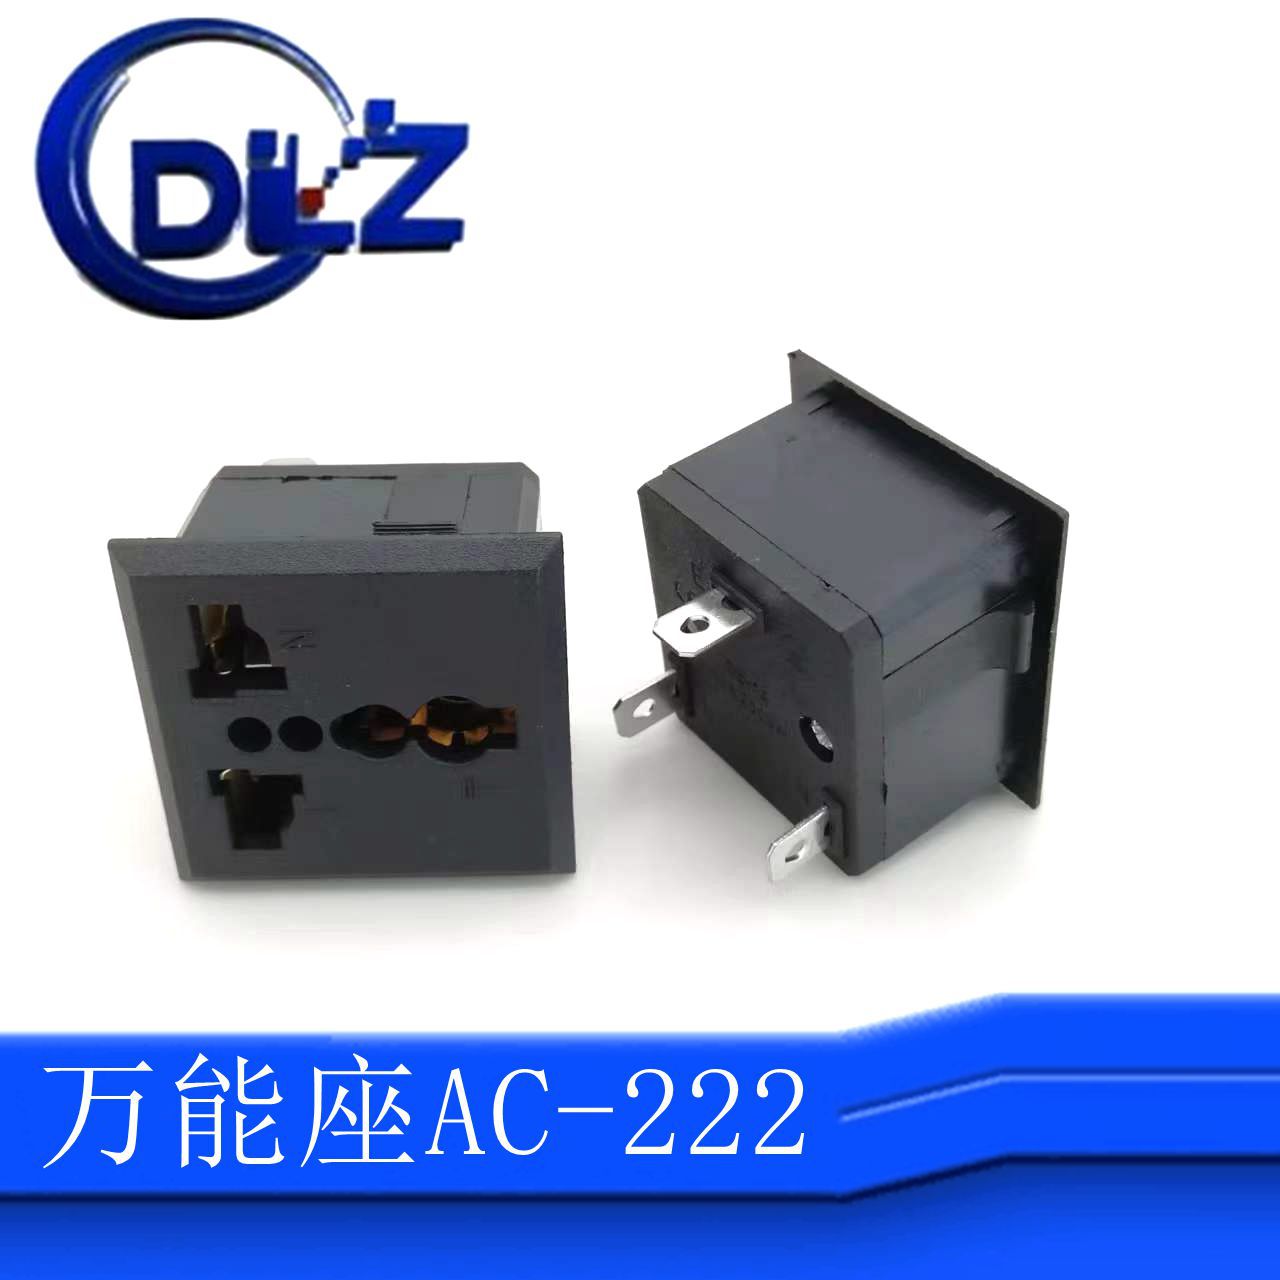 供应电源插座  品质万能插座   AC插座 多功能插座AC-222三脚插座